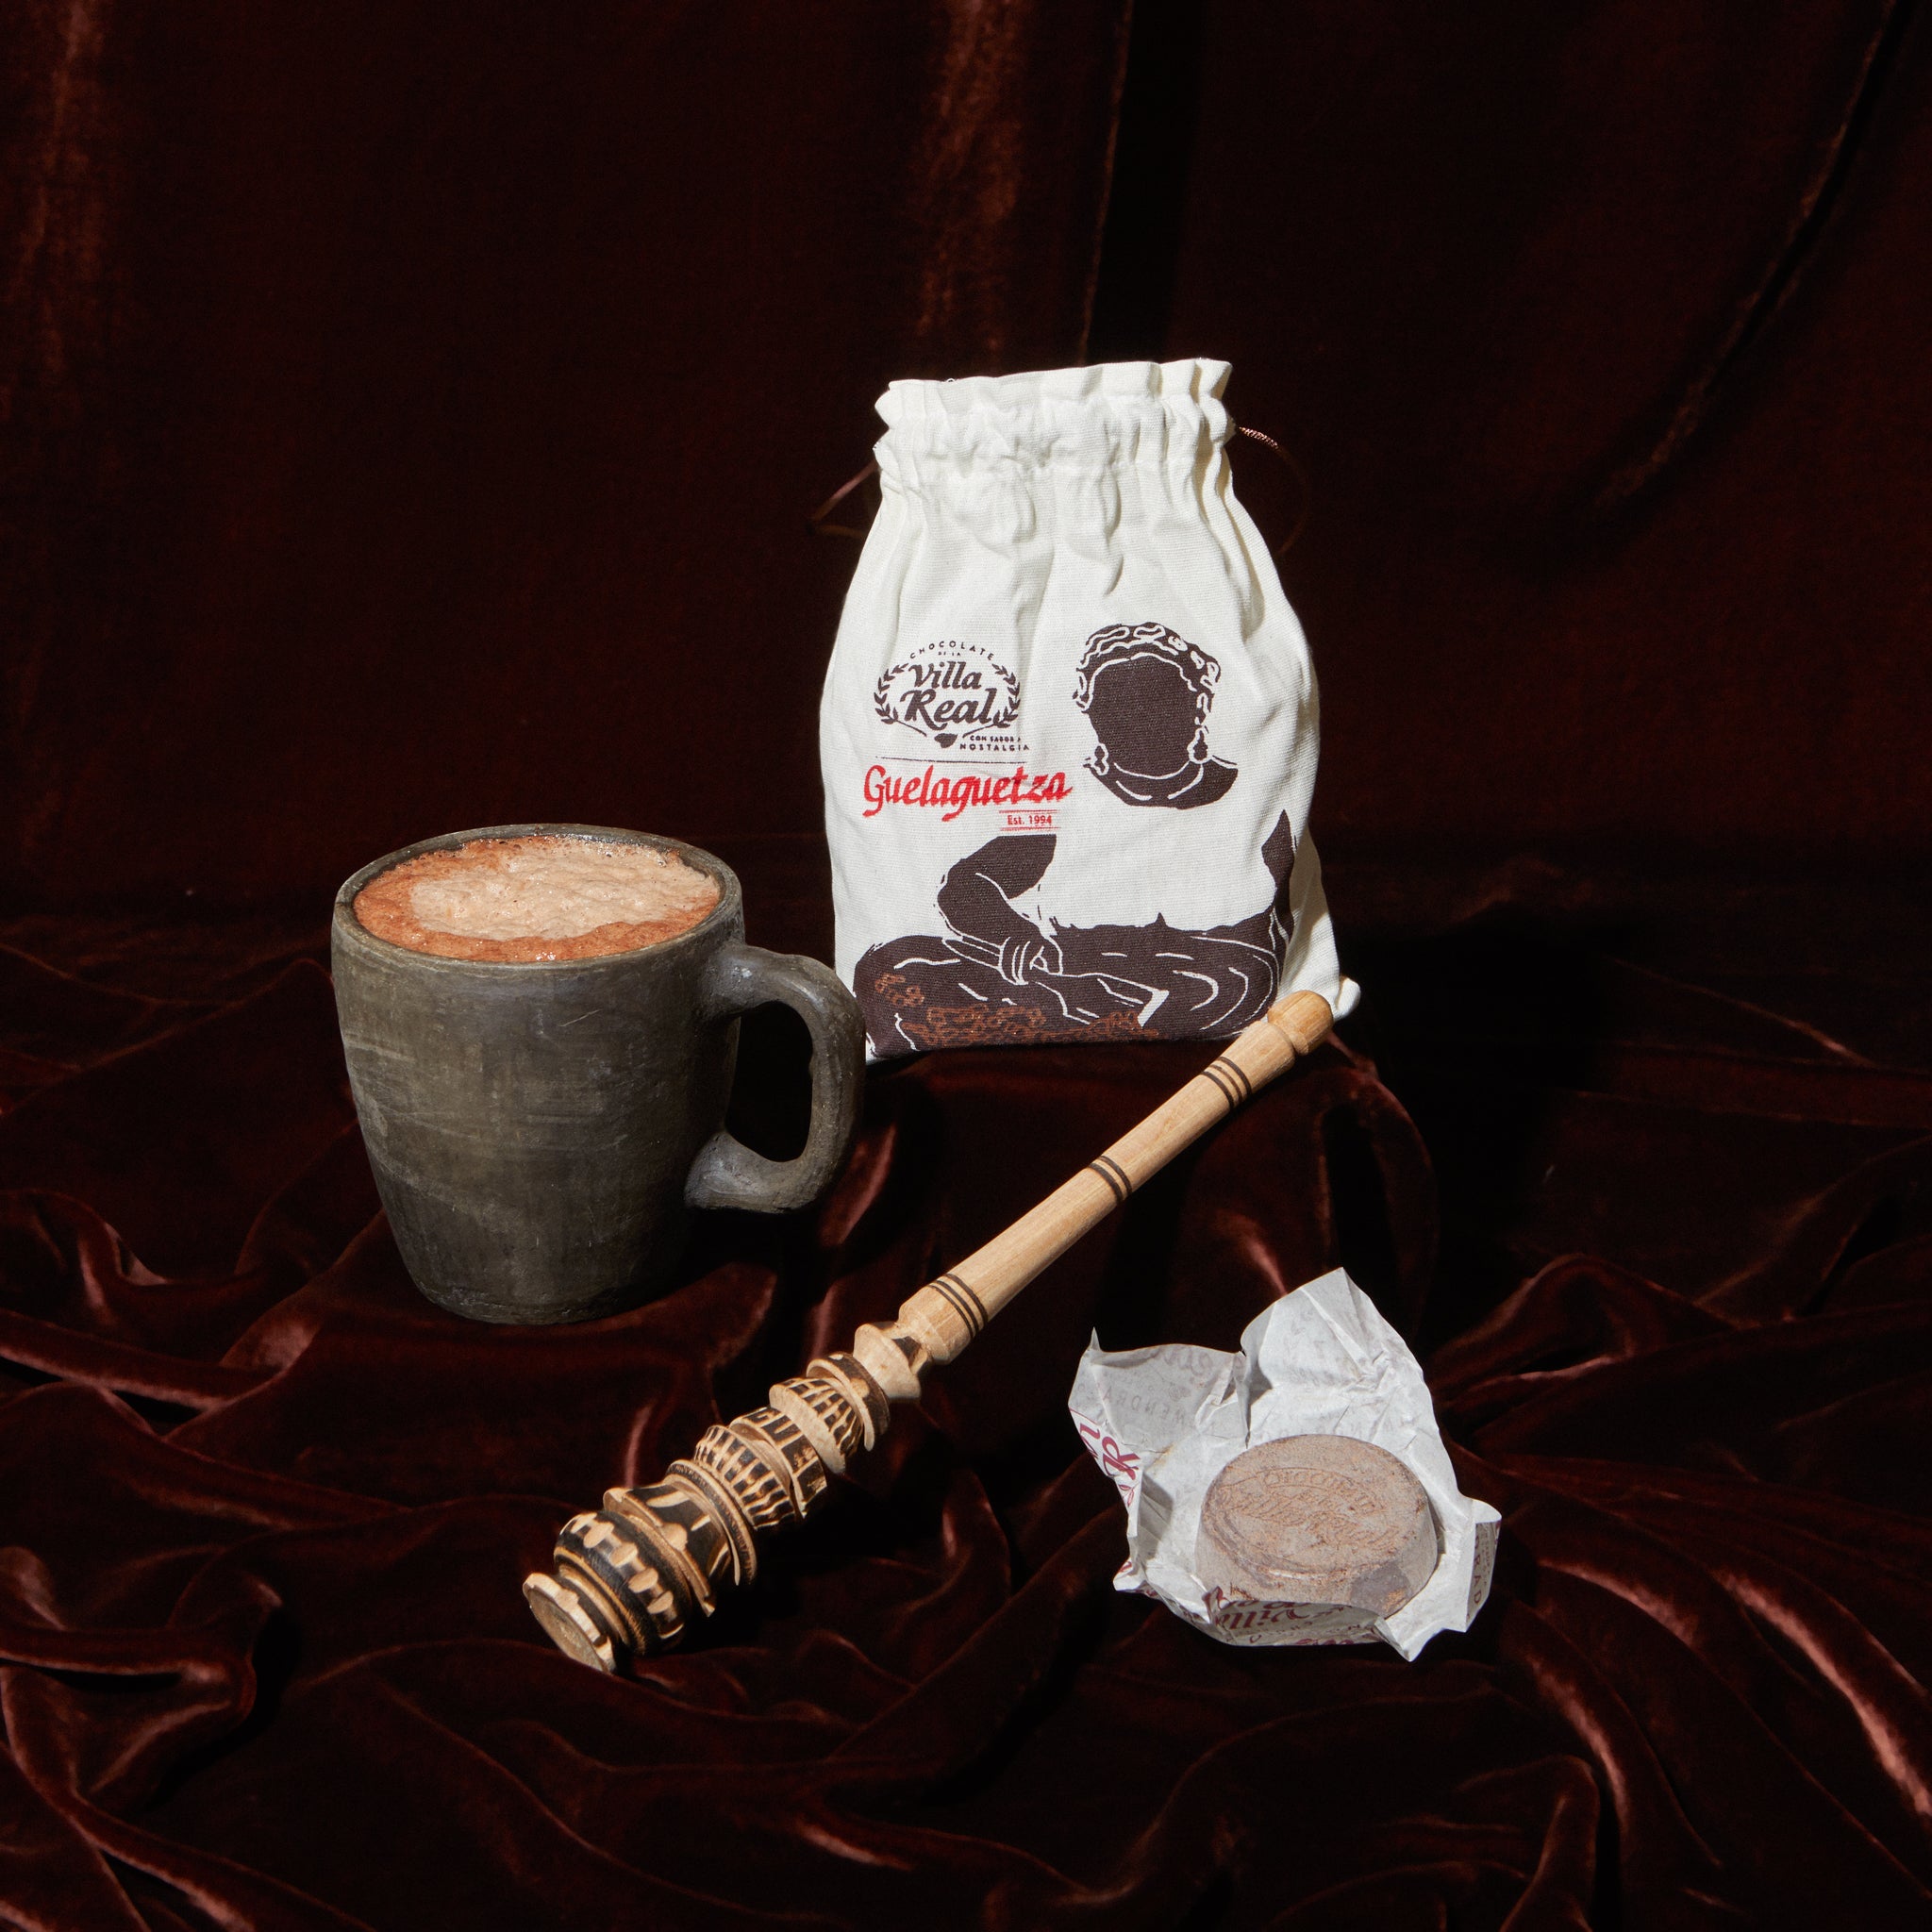 Hot Cocoa Mug Gift Set